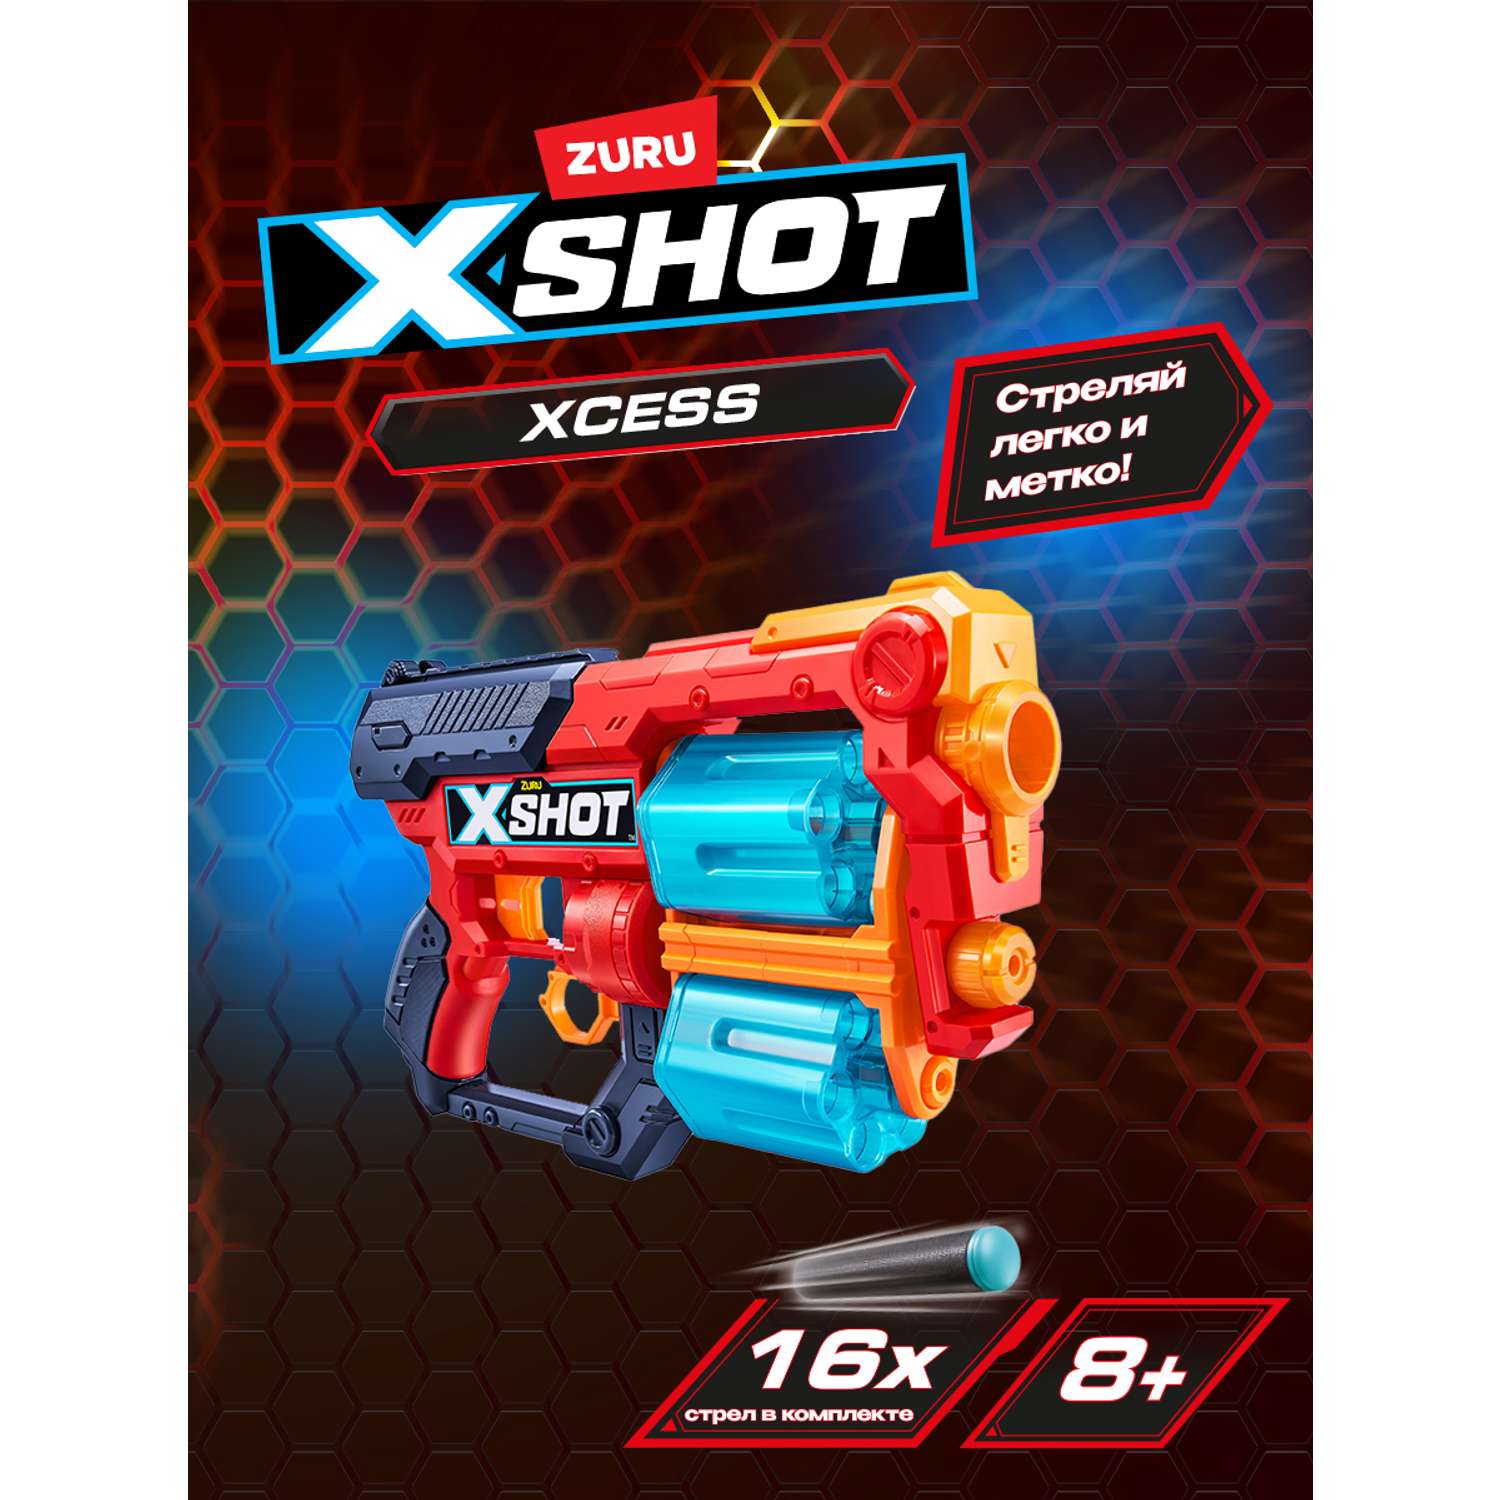 Набор X-SHOT  Эксесс 36436 - фото 1